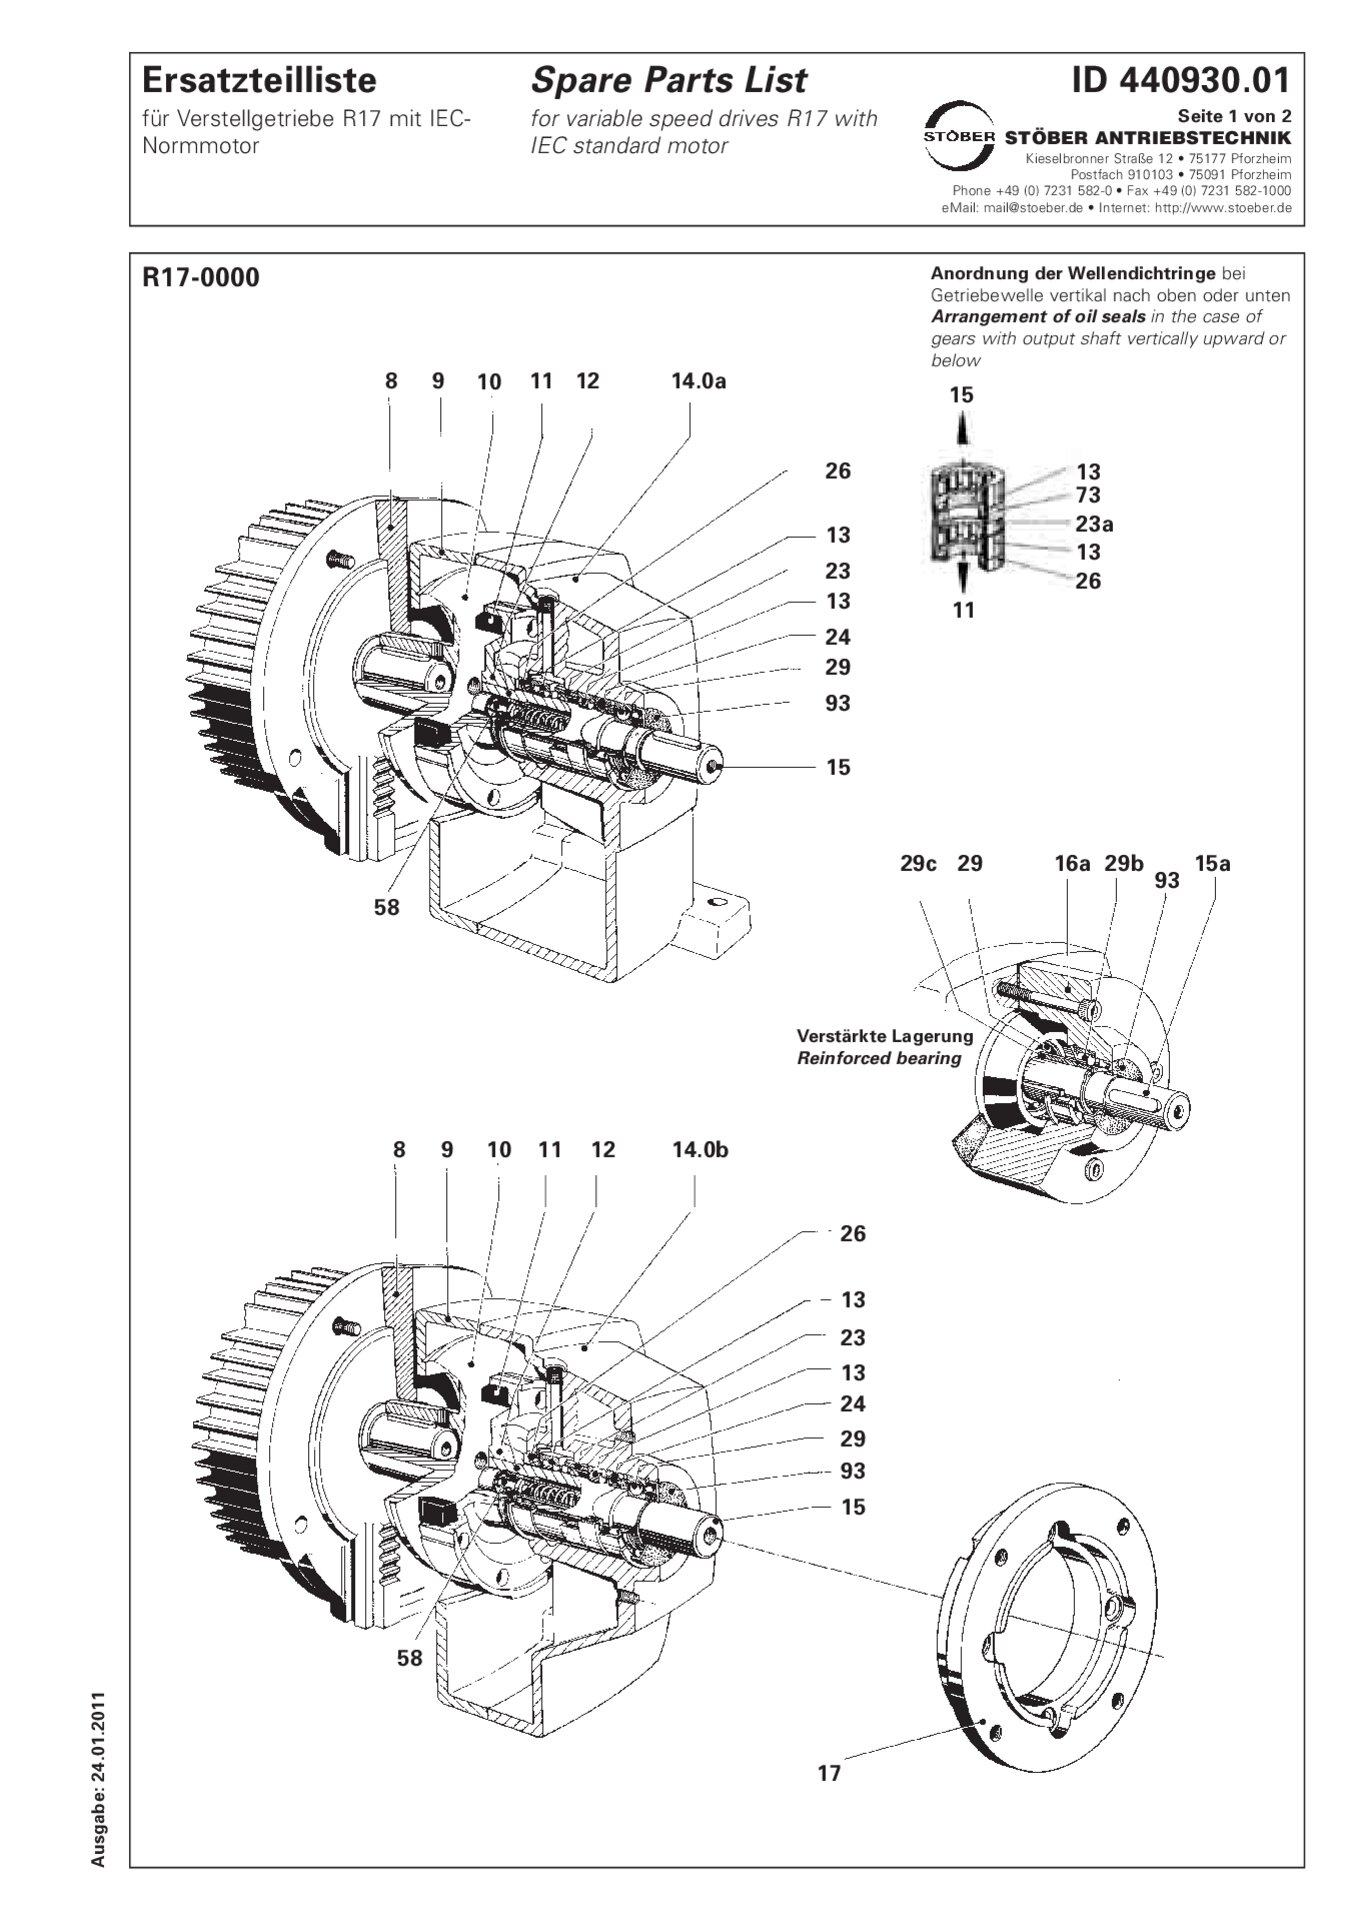 Spare parts list R17-0 with IEC standard motorErsatzteilliste R17-0000 mit IEC-Normmotor